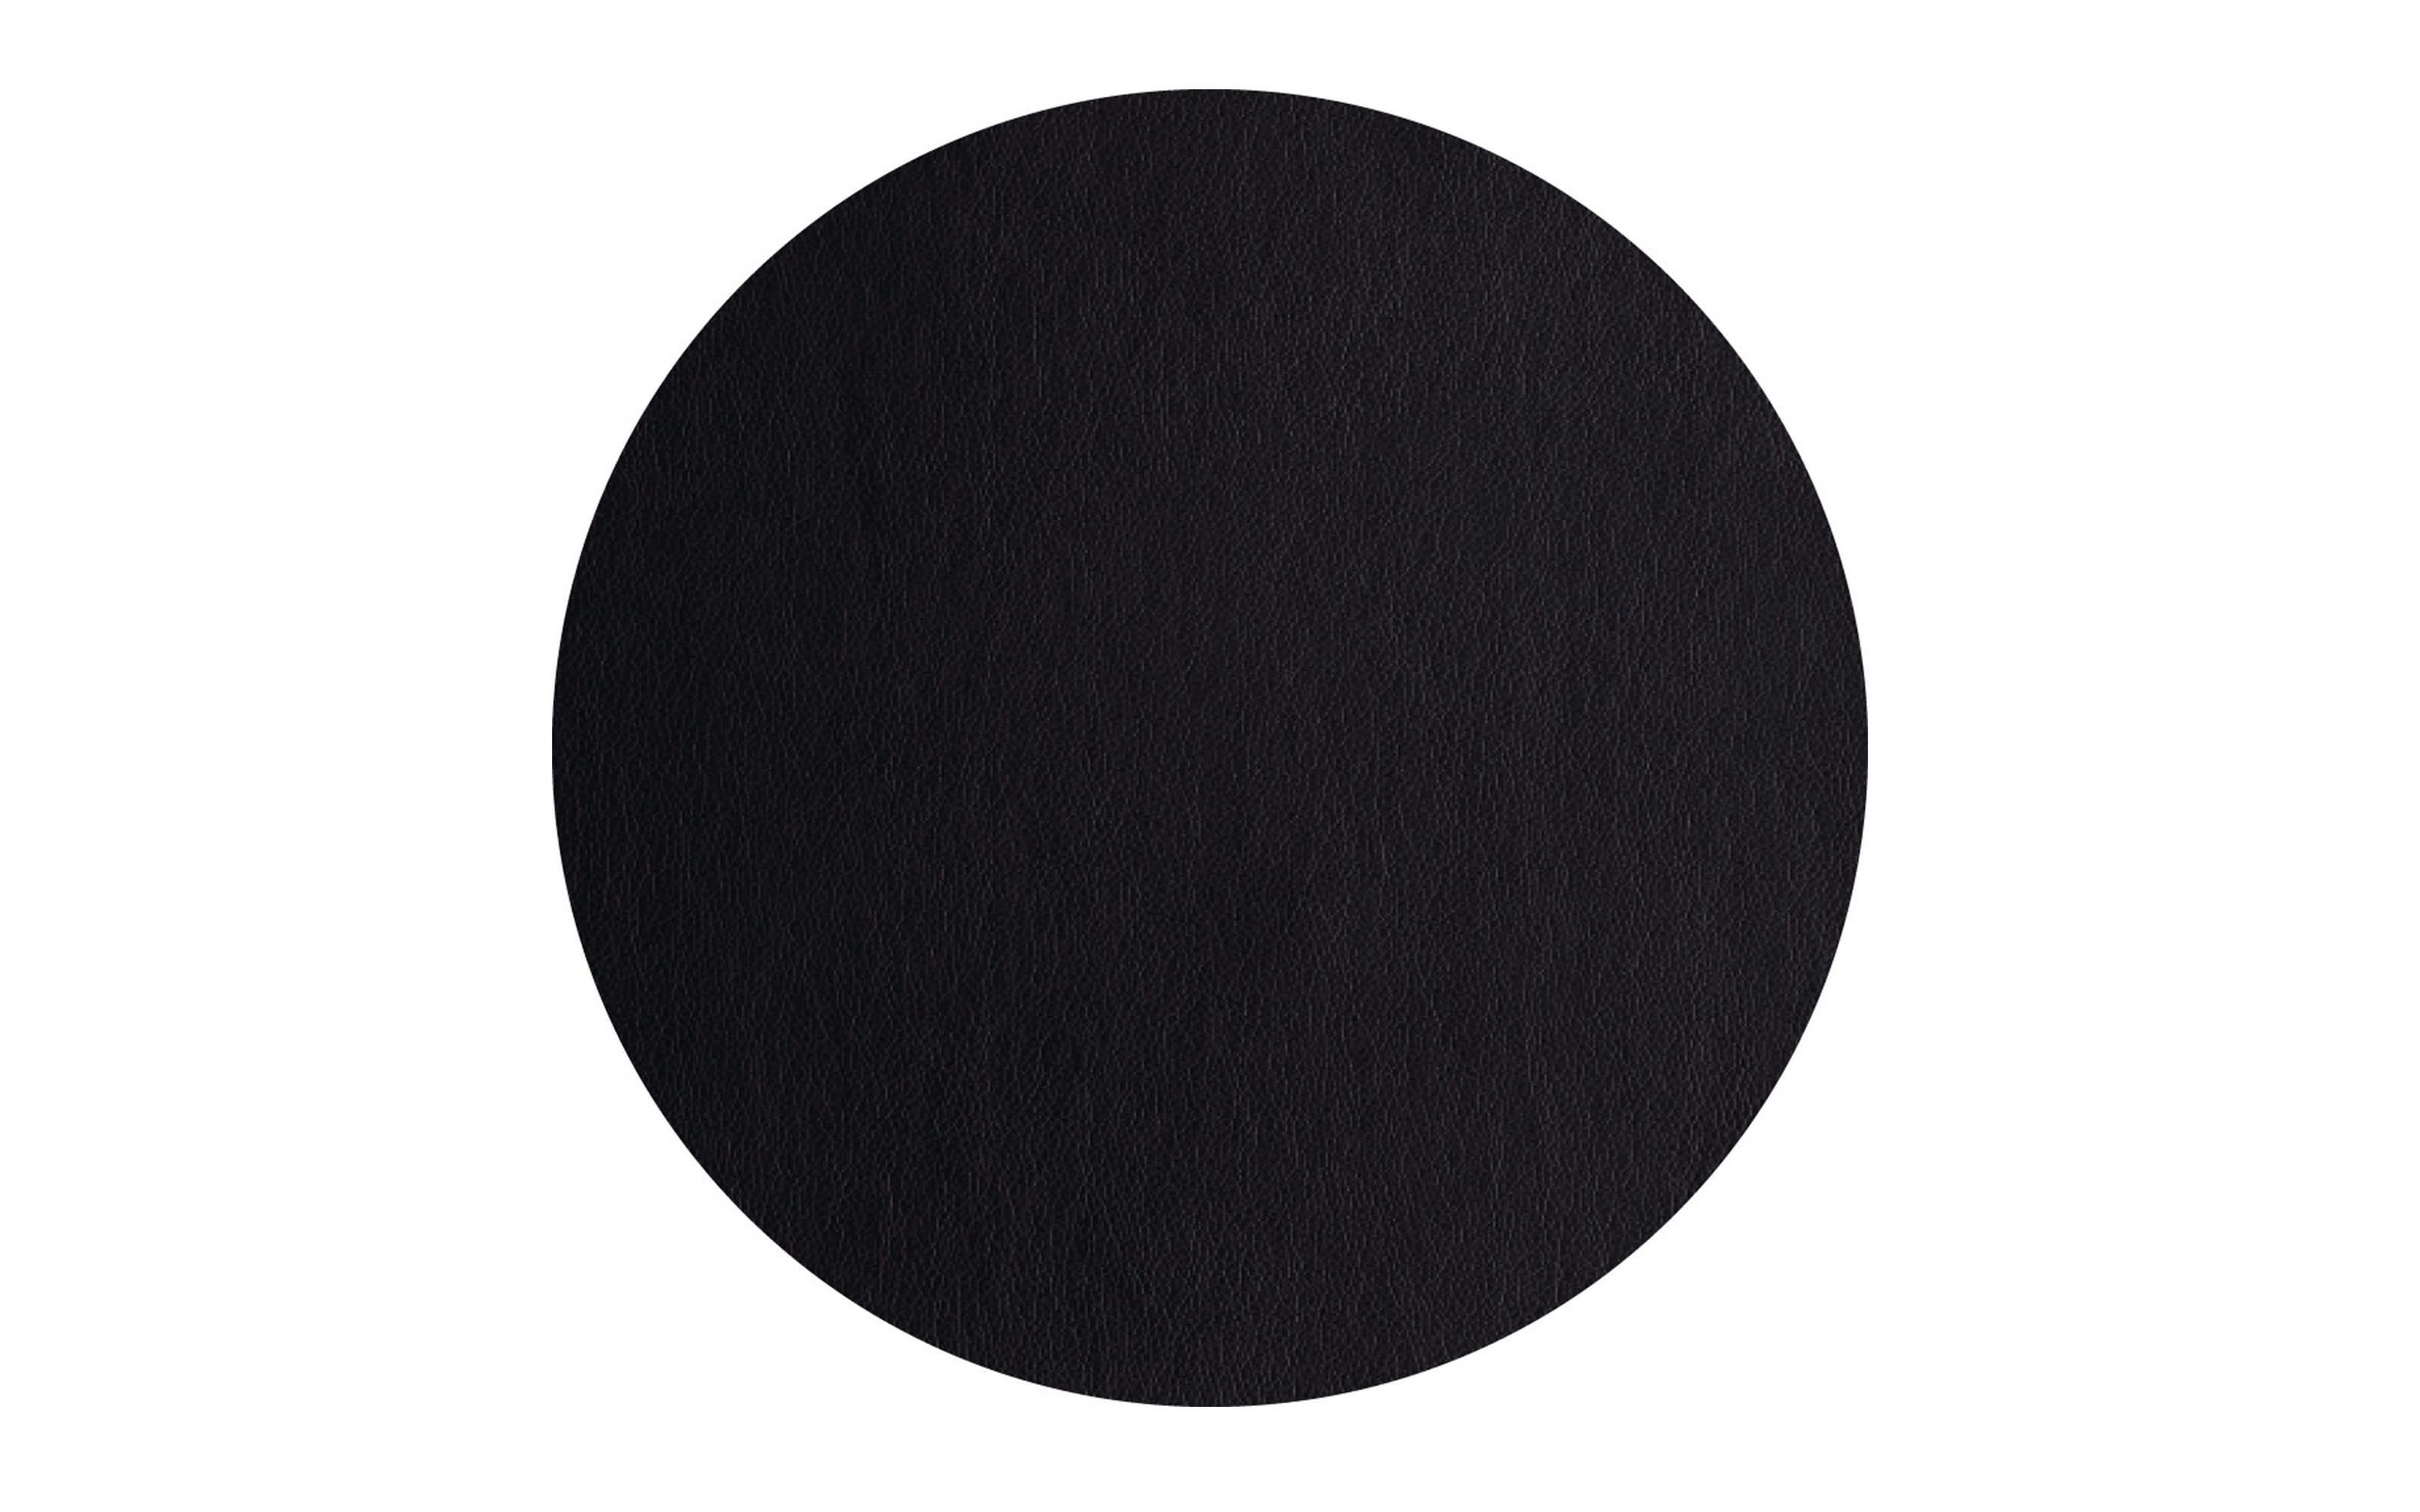 Tischset schwarz, 38 cm